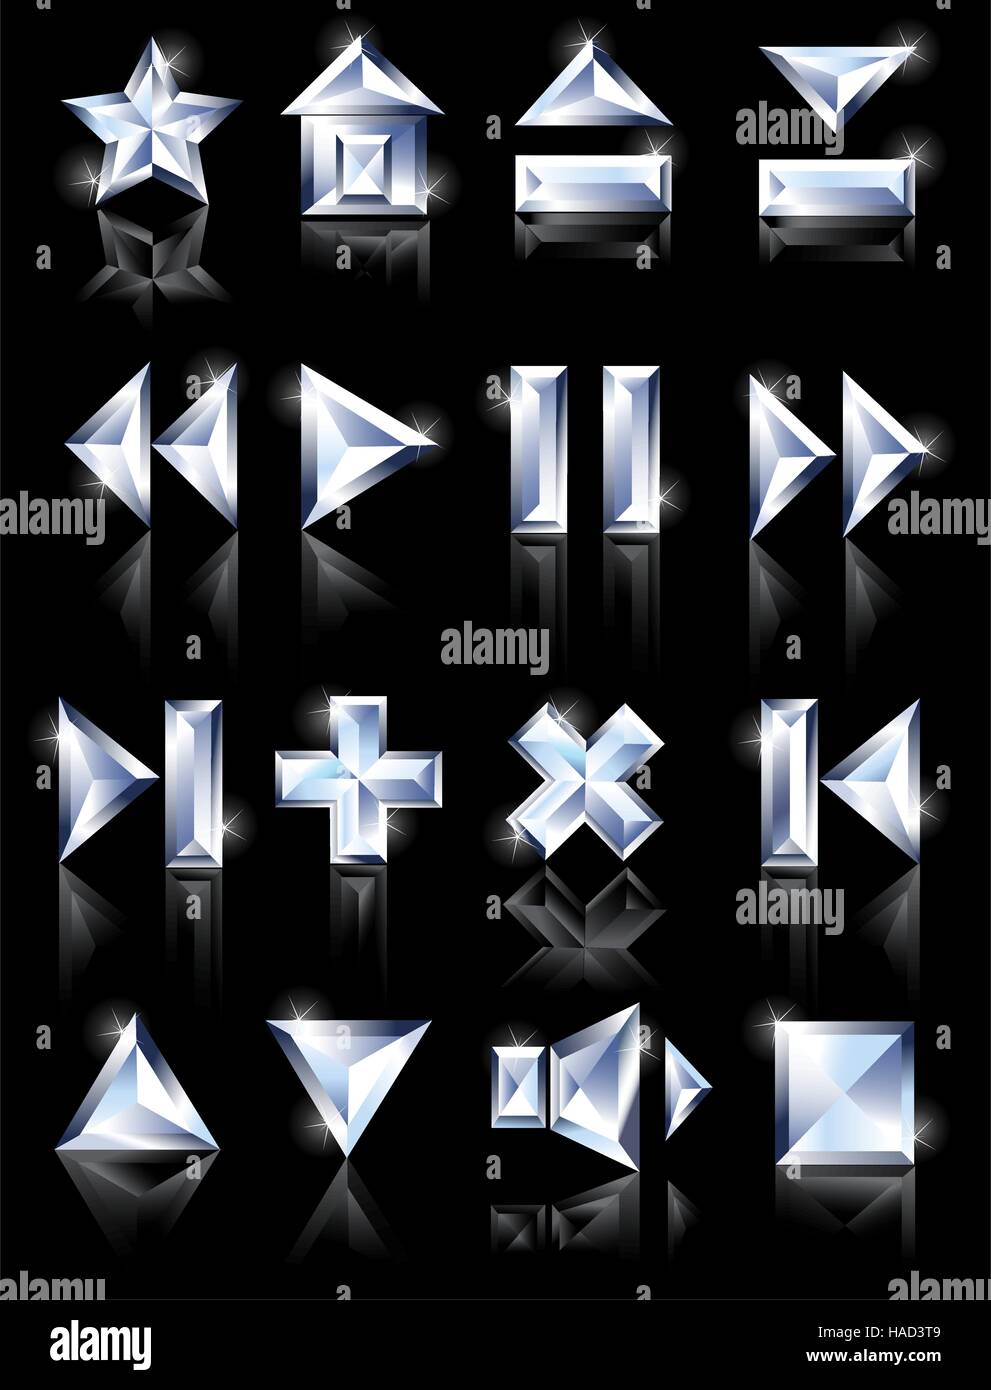 Taglio diamante icone multimediali su un black mirror background: pausa, home, caricamento, plus, inoltre, gioco Illustrazione Vettoriale